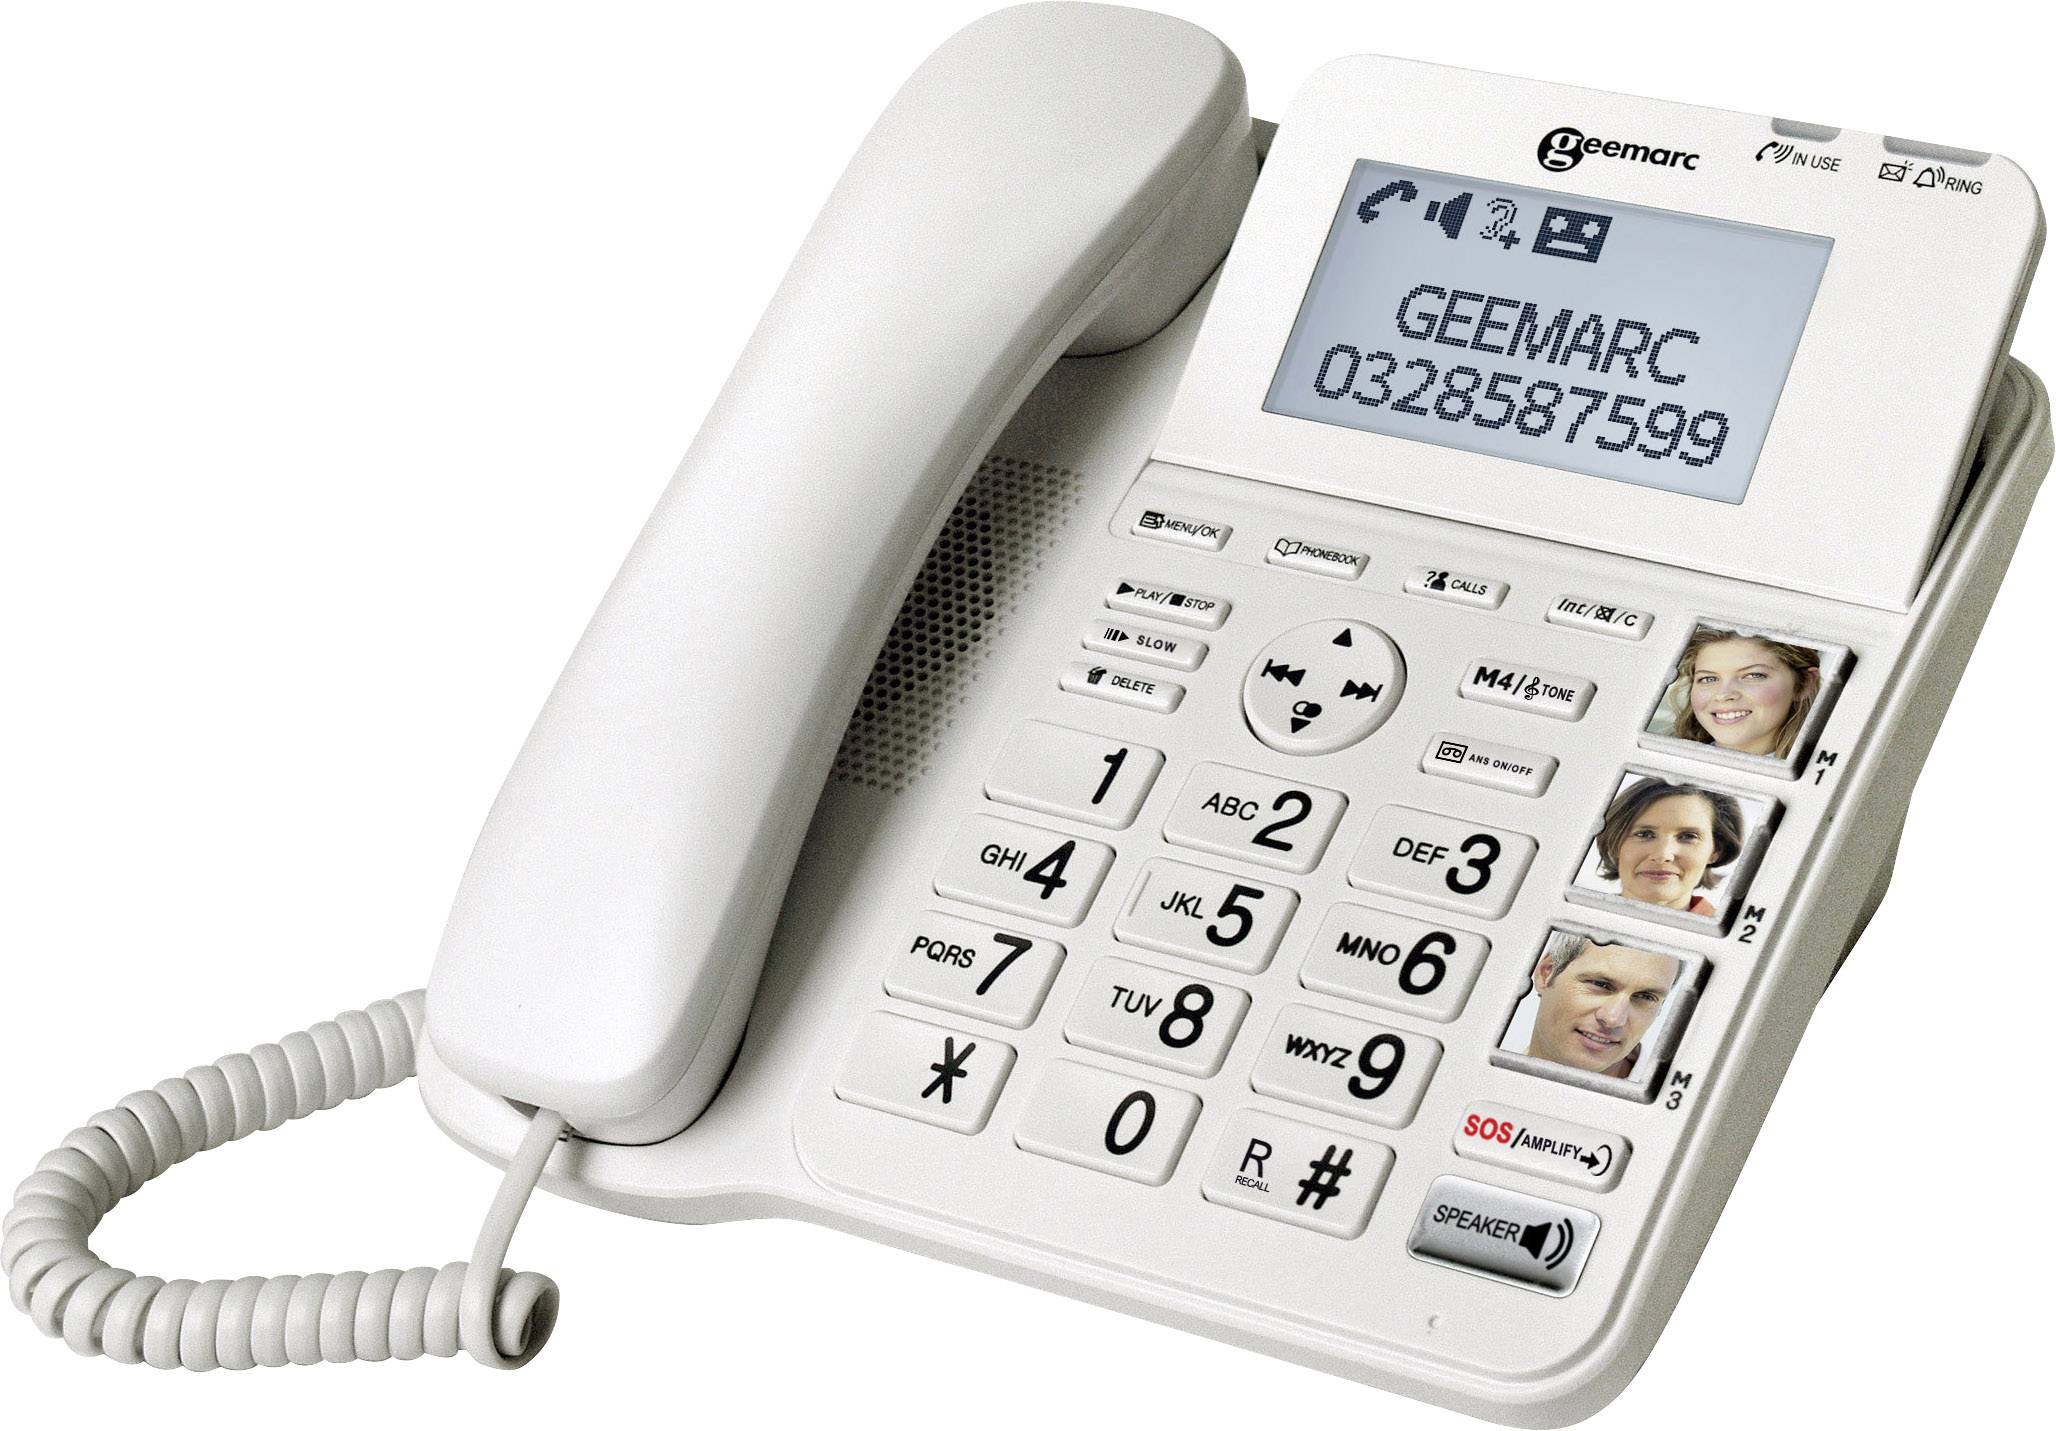 GEEMARC CL595 Schnurgebundenes Seniorentelefon Anrufbeantworter, Freisprechen, Optische Anrufsi